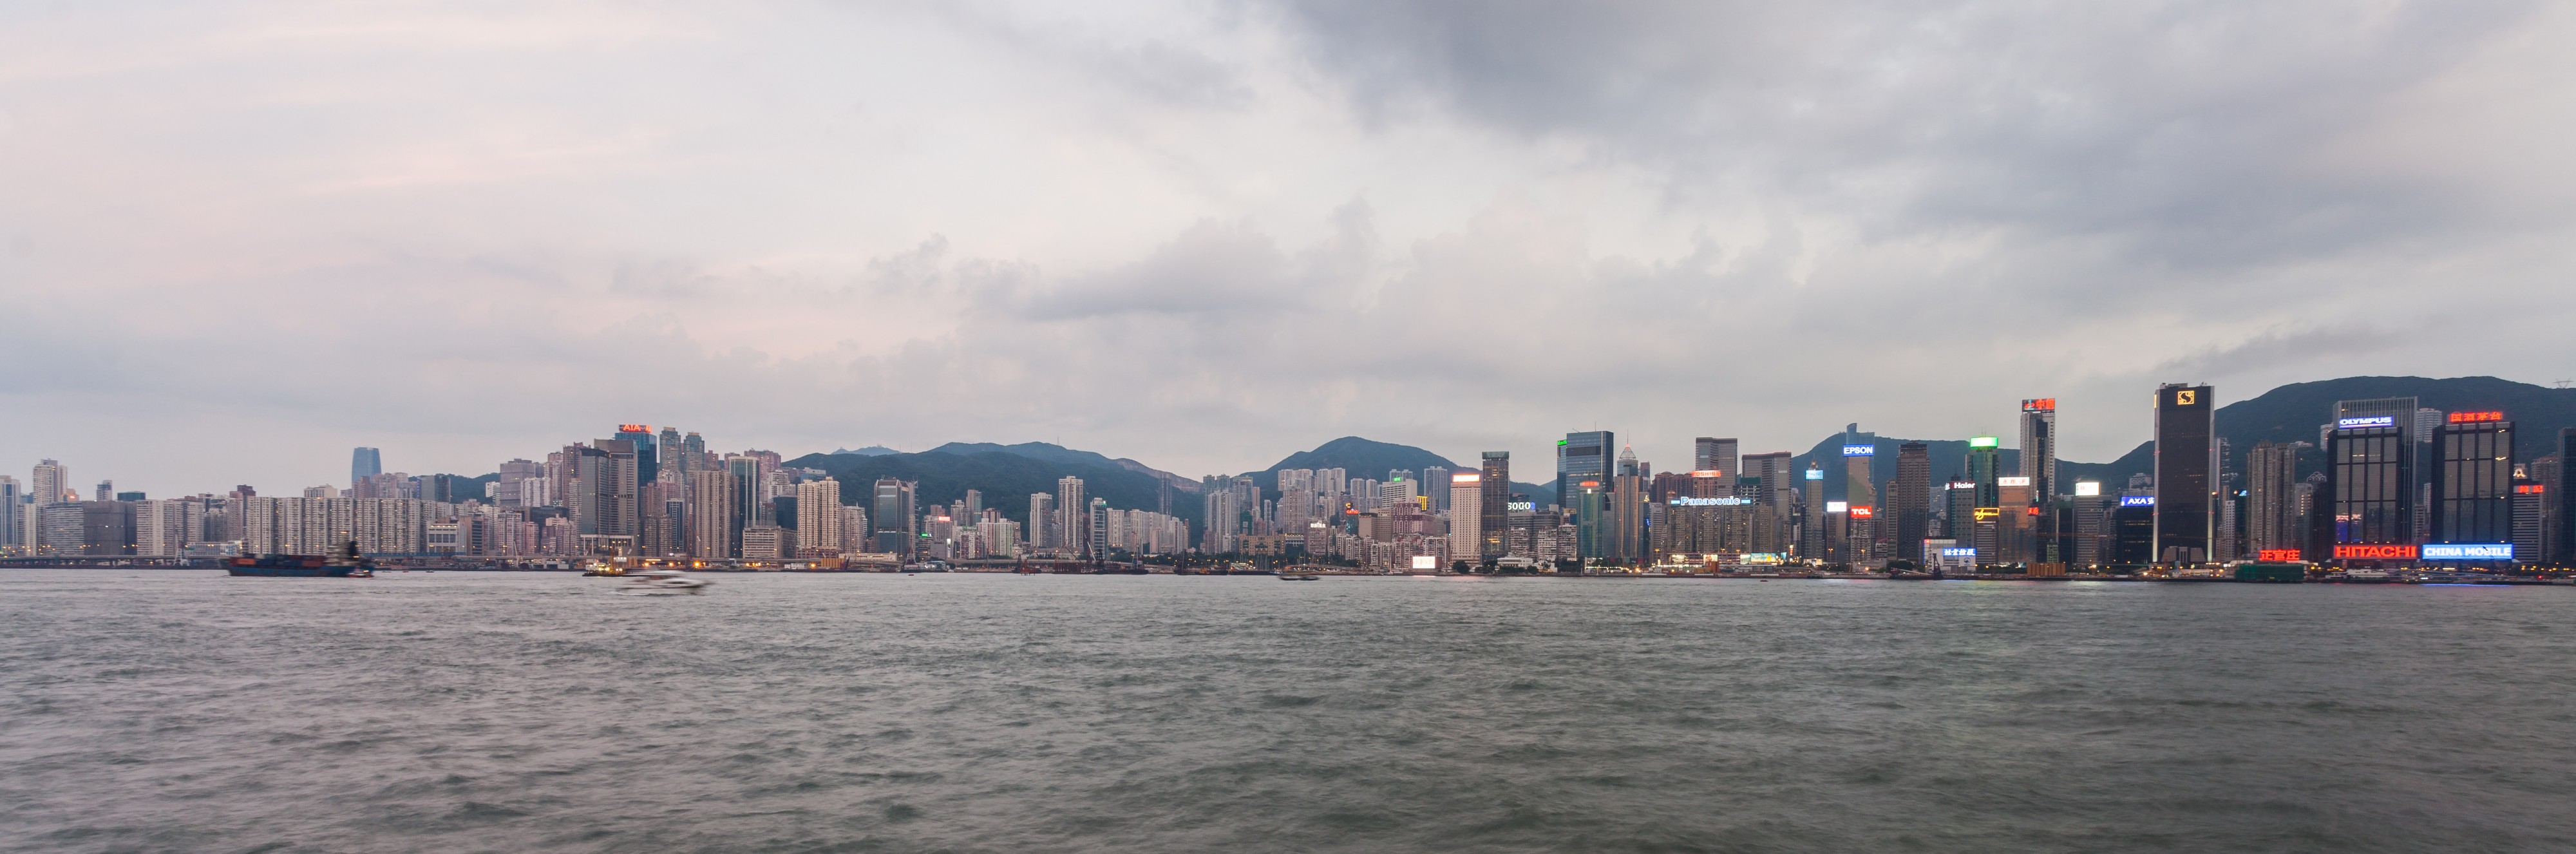 Vista del Puerto de Victoria desde Kowloon, Hong Kong, 2013-08-11, DD 04